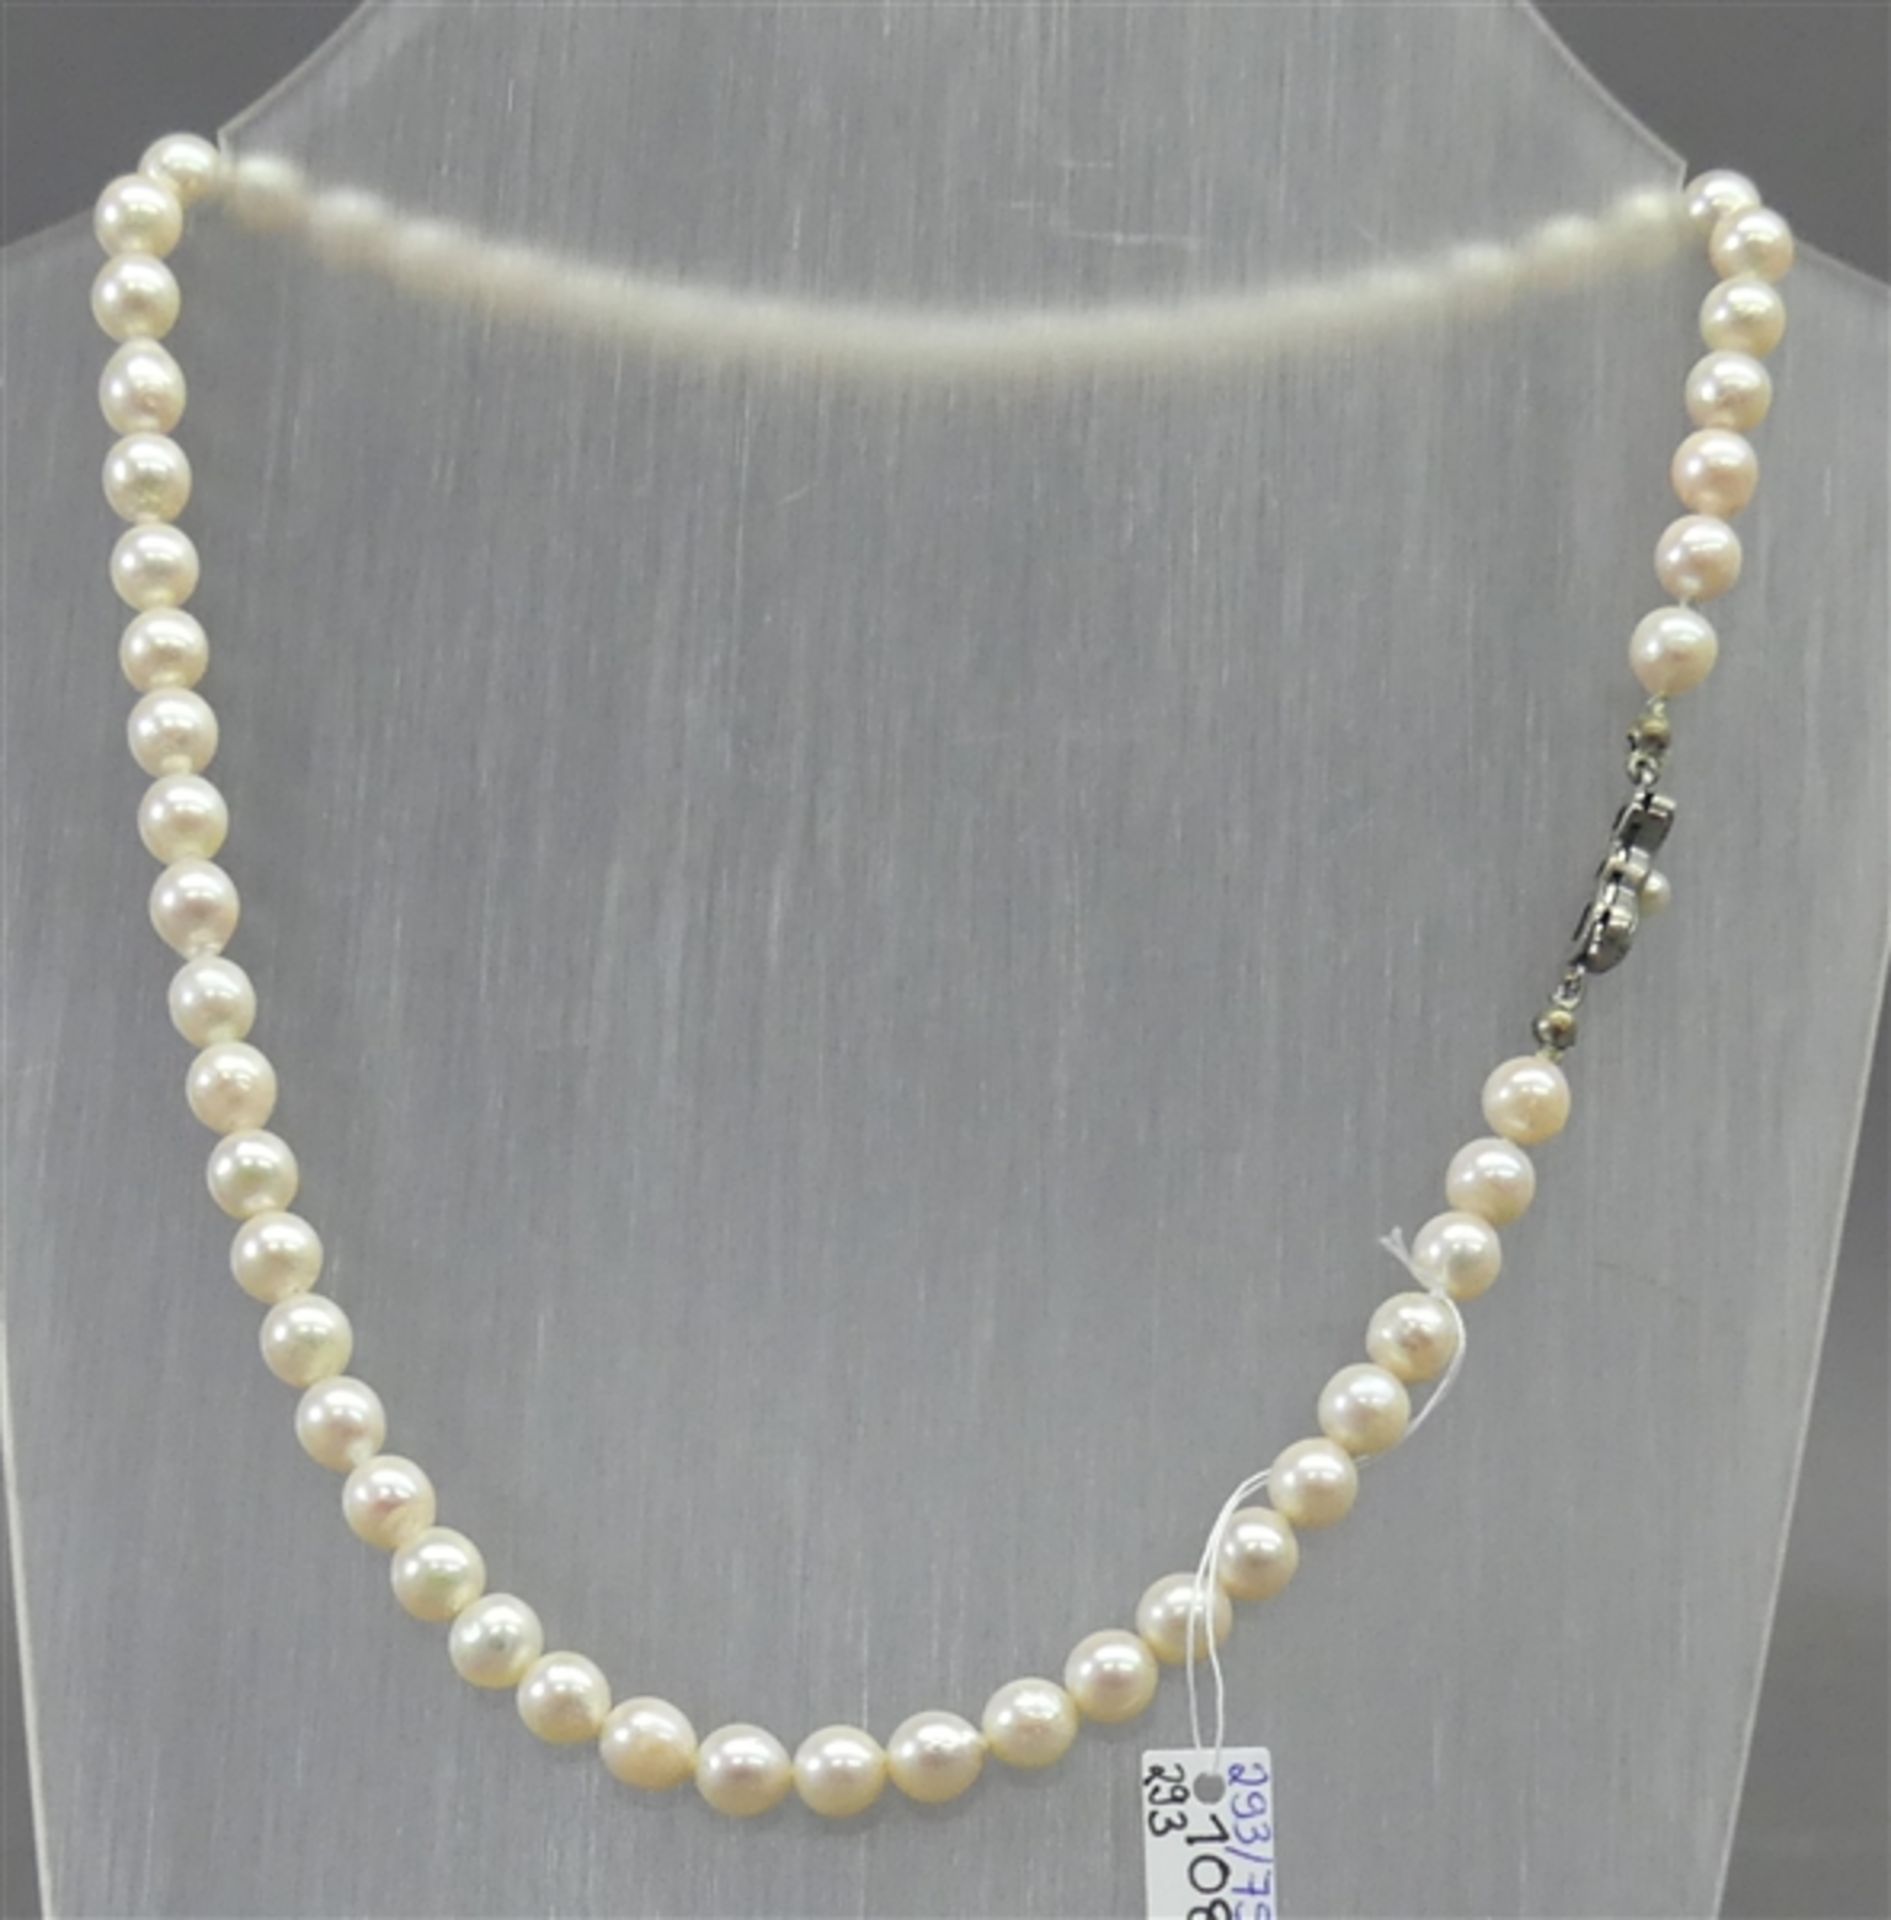 Halskette Silberschloss, 58 weiße Perlen, d 7 mm, l 41 cm,